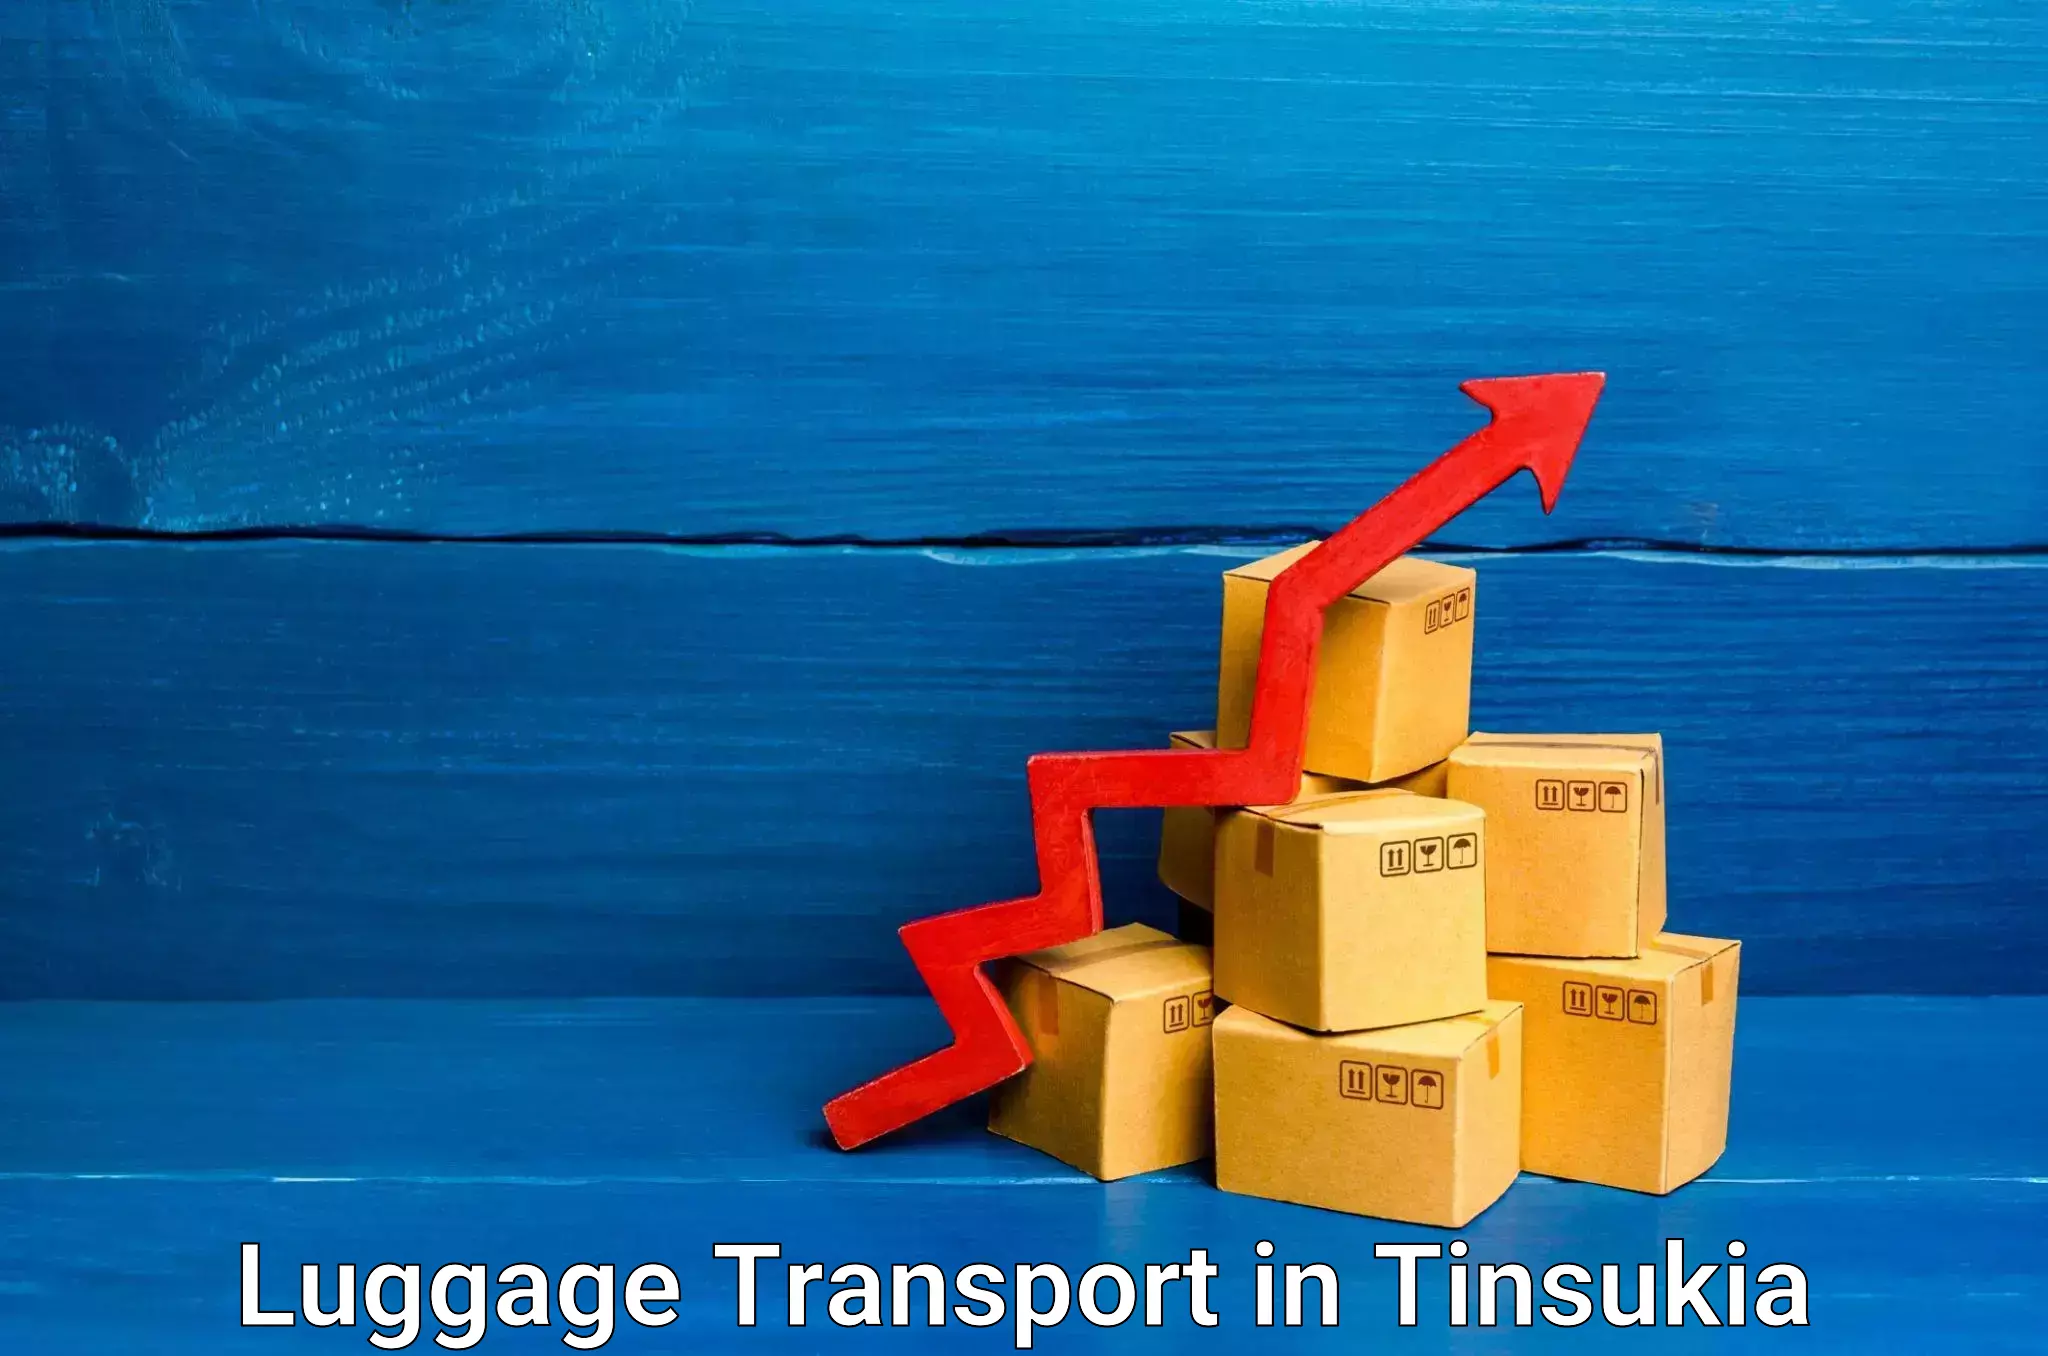 Luggage shipment tracking in Tinsukia